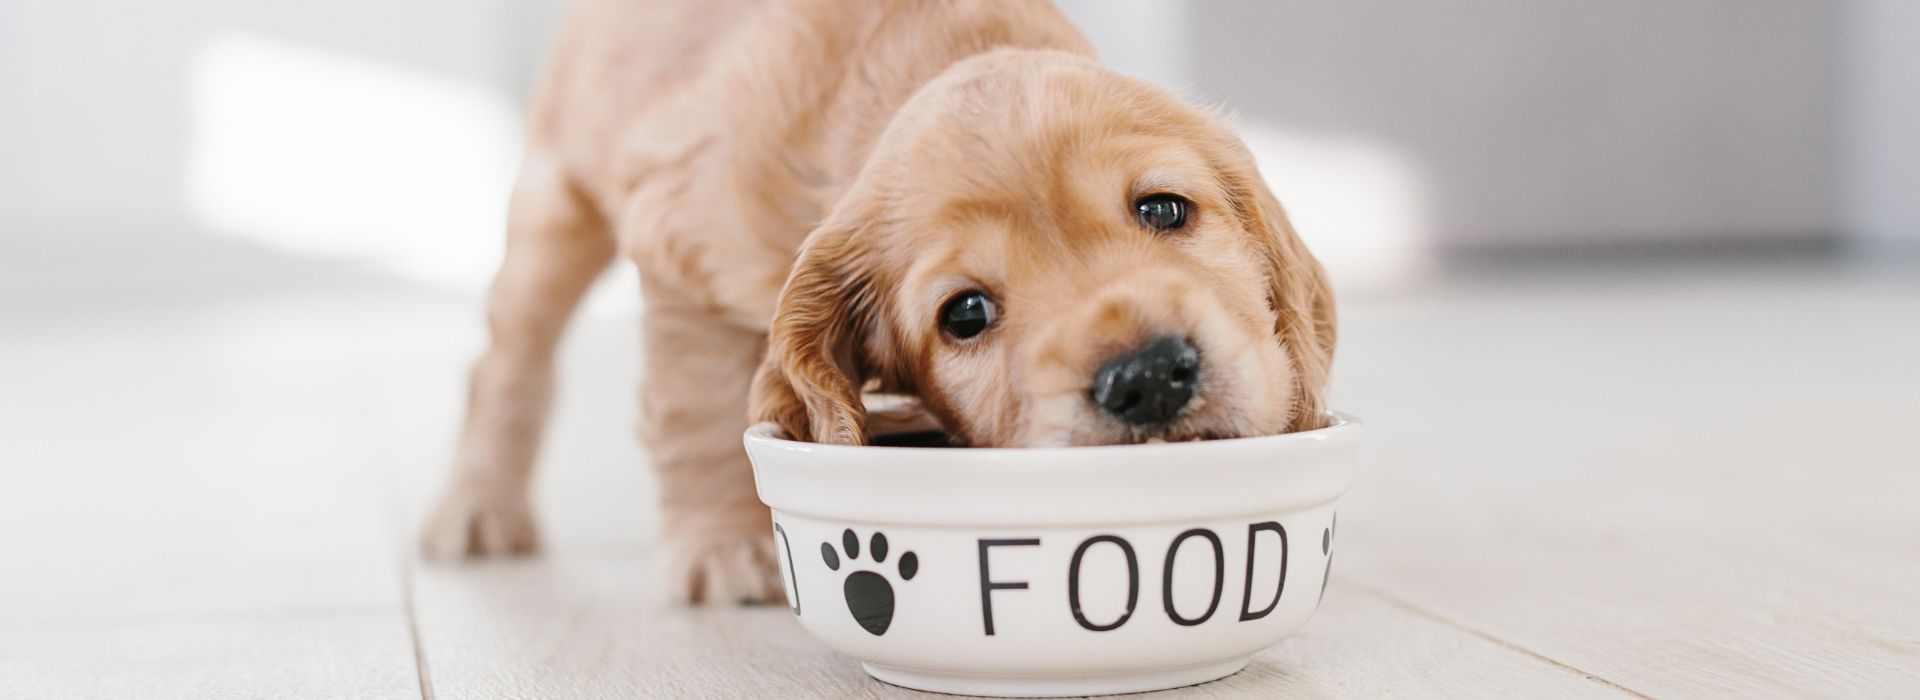 בחירת מזון לכלב